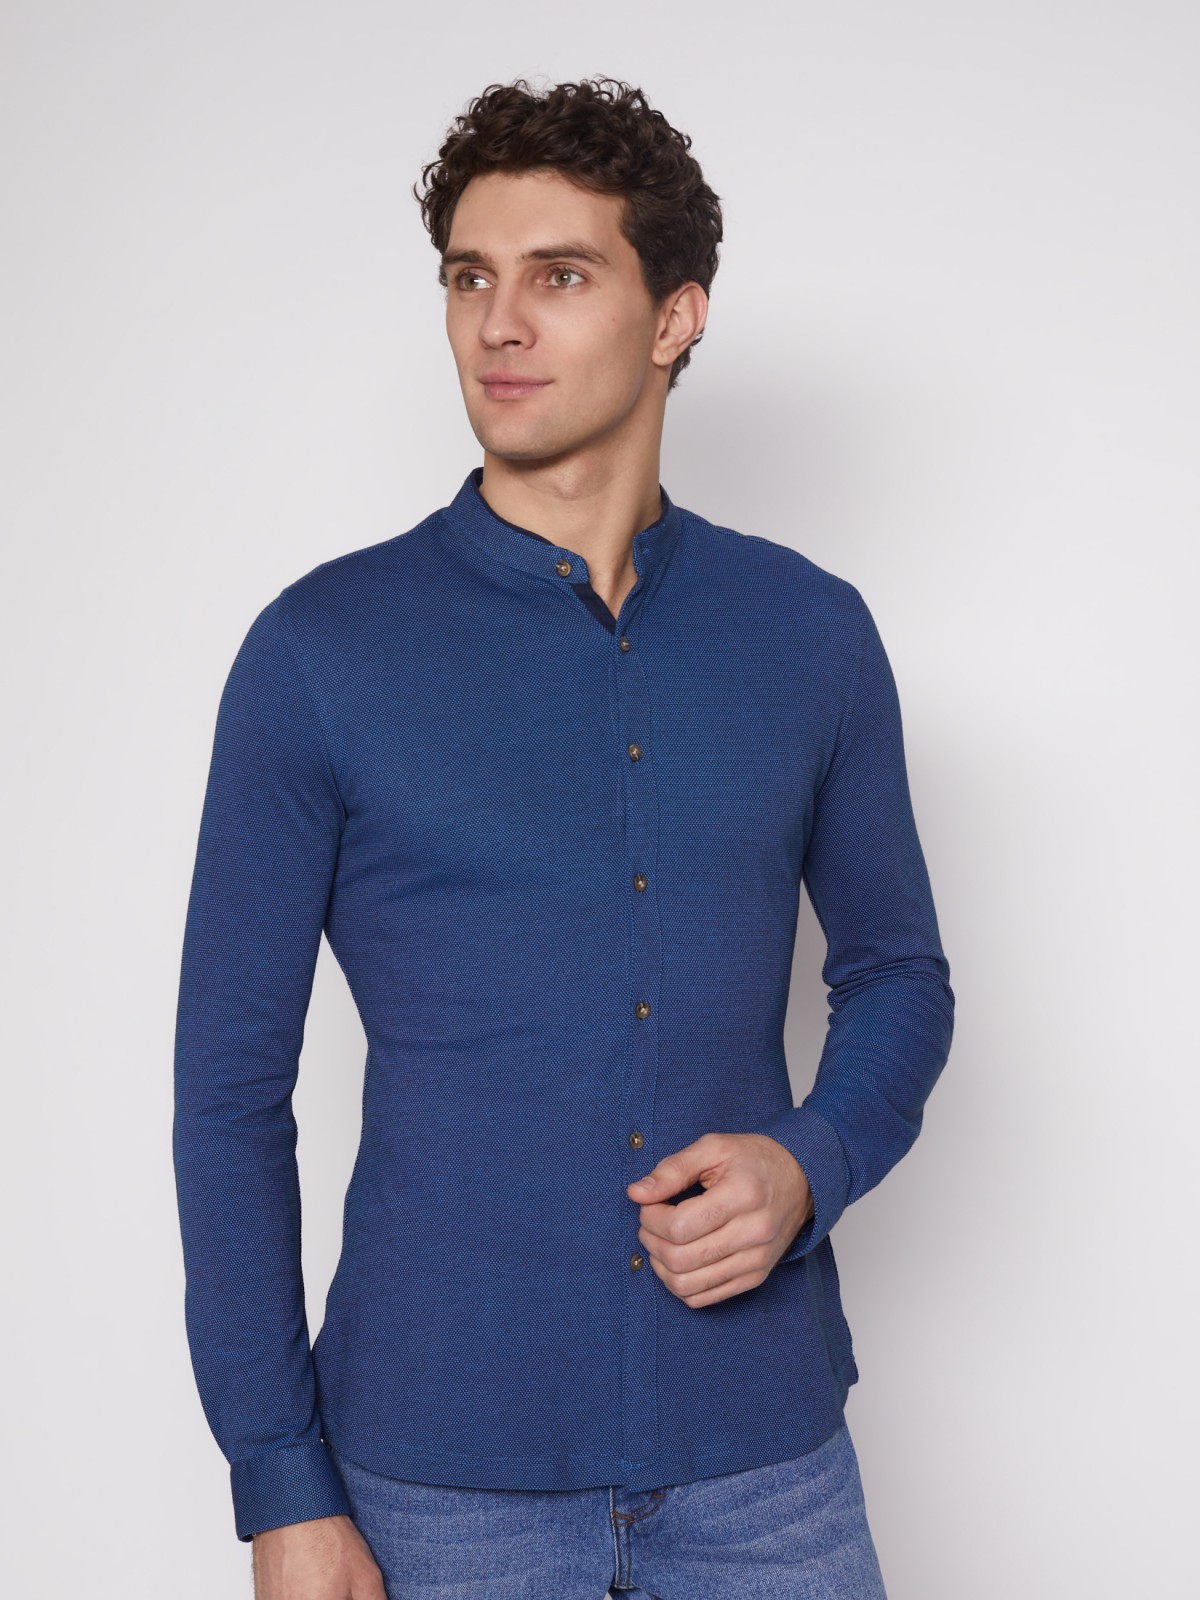 Рубашка с воротником-стойкой zolla 012132159023, цвет темно-синий, размер S - фото 4